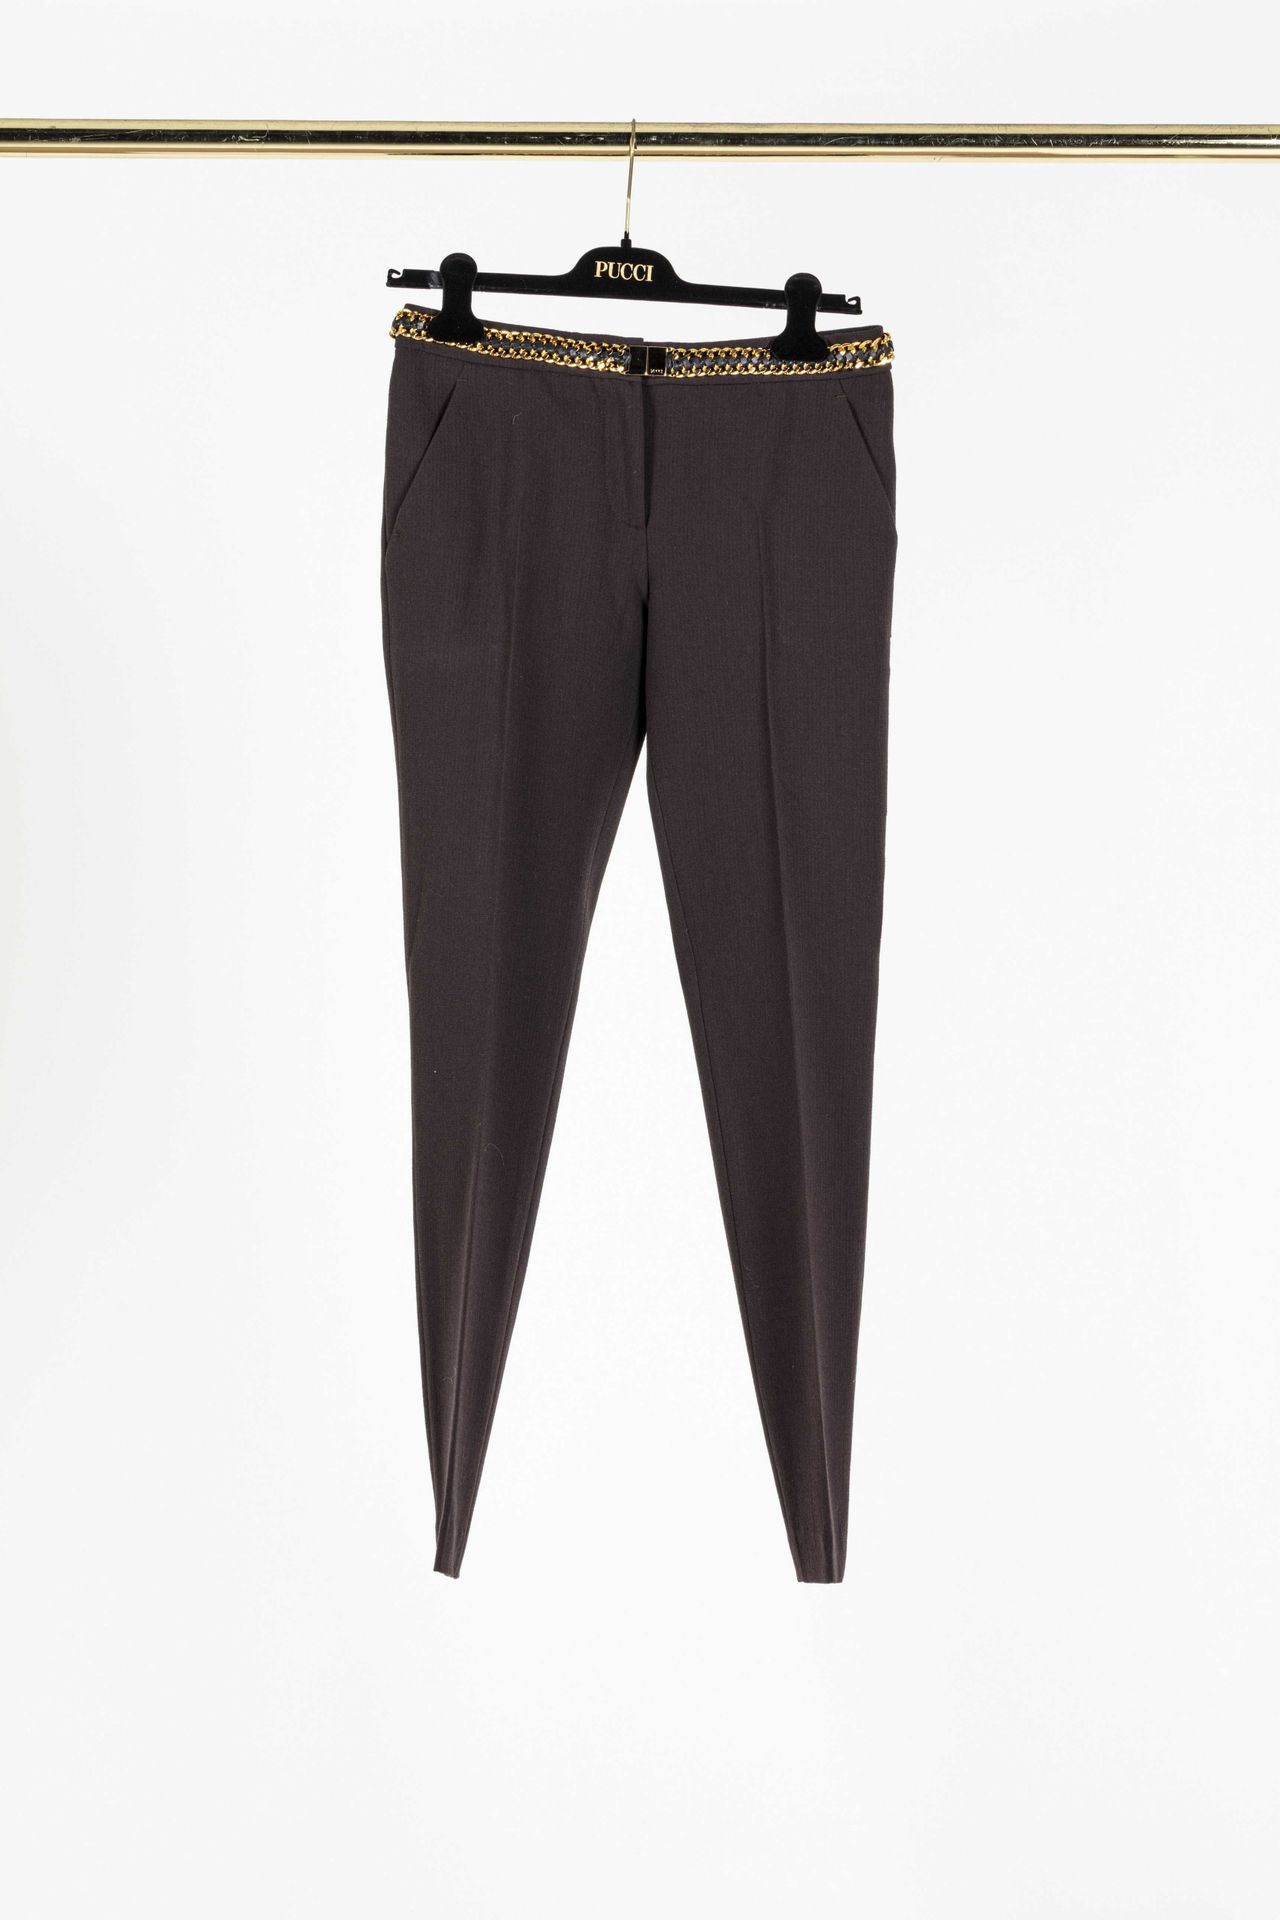 Null EMILIO PUCCI: pantaloni dritti in lana marrone ed elastan, cintura stilizza&hellip;